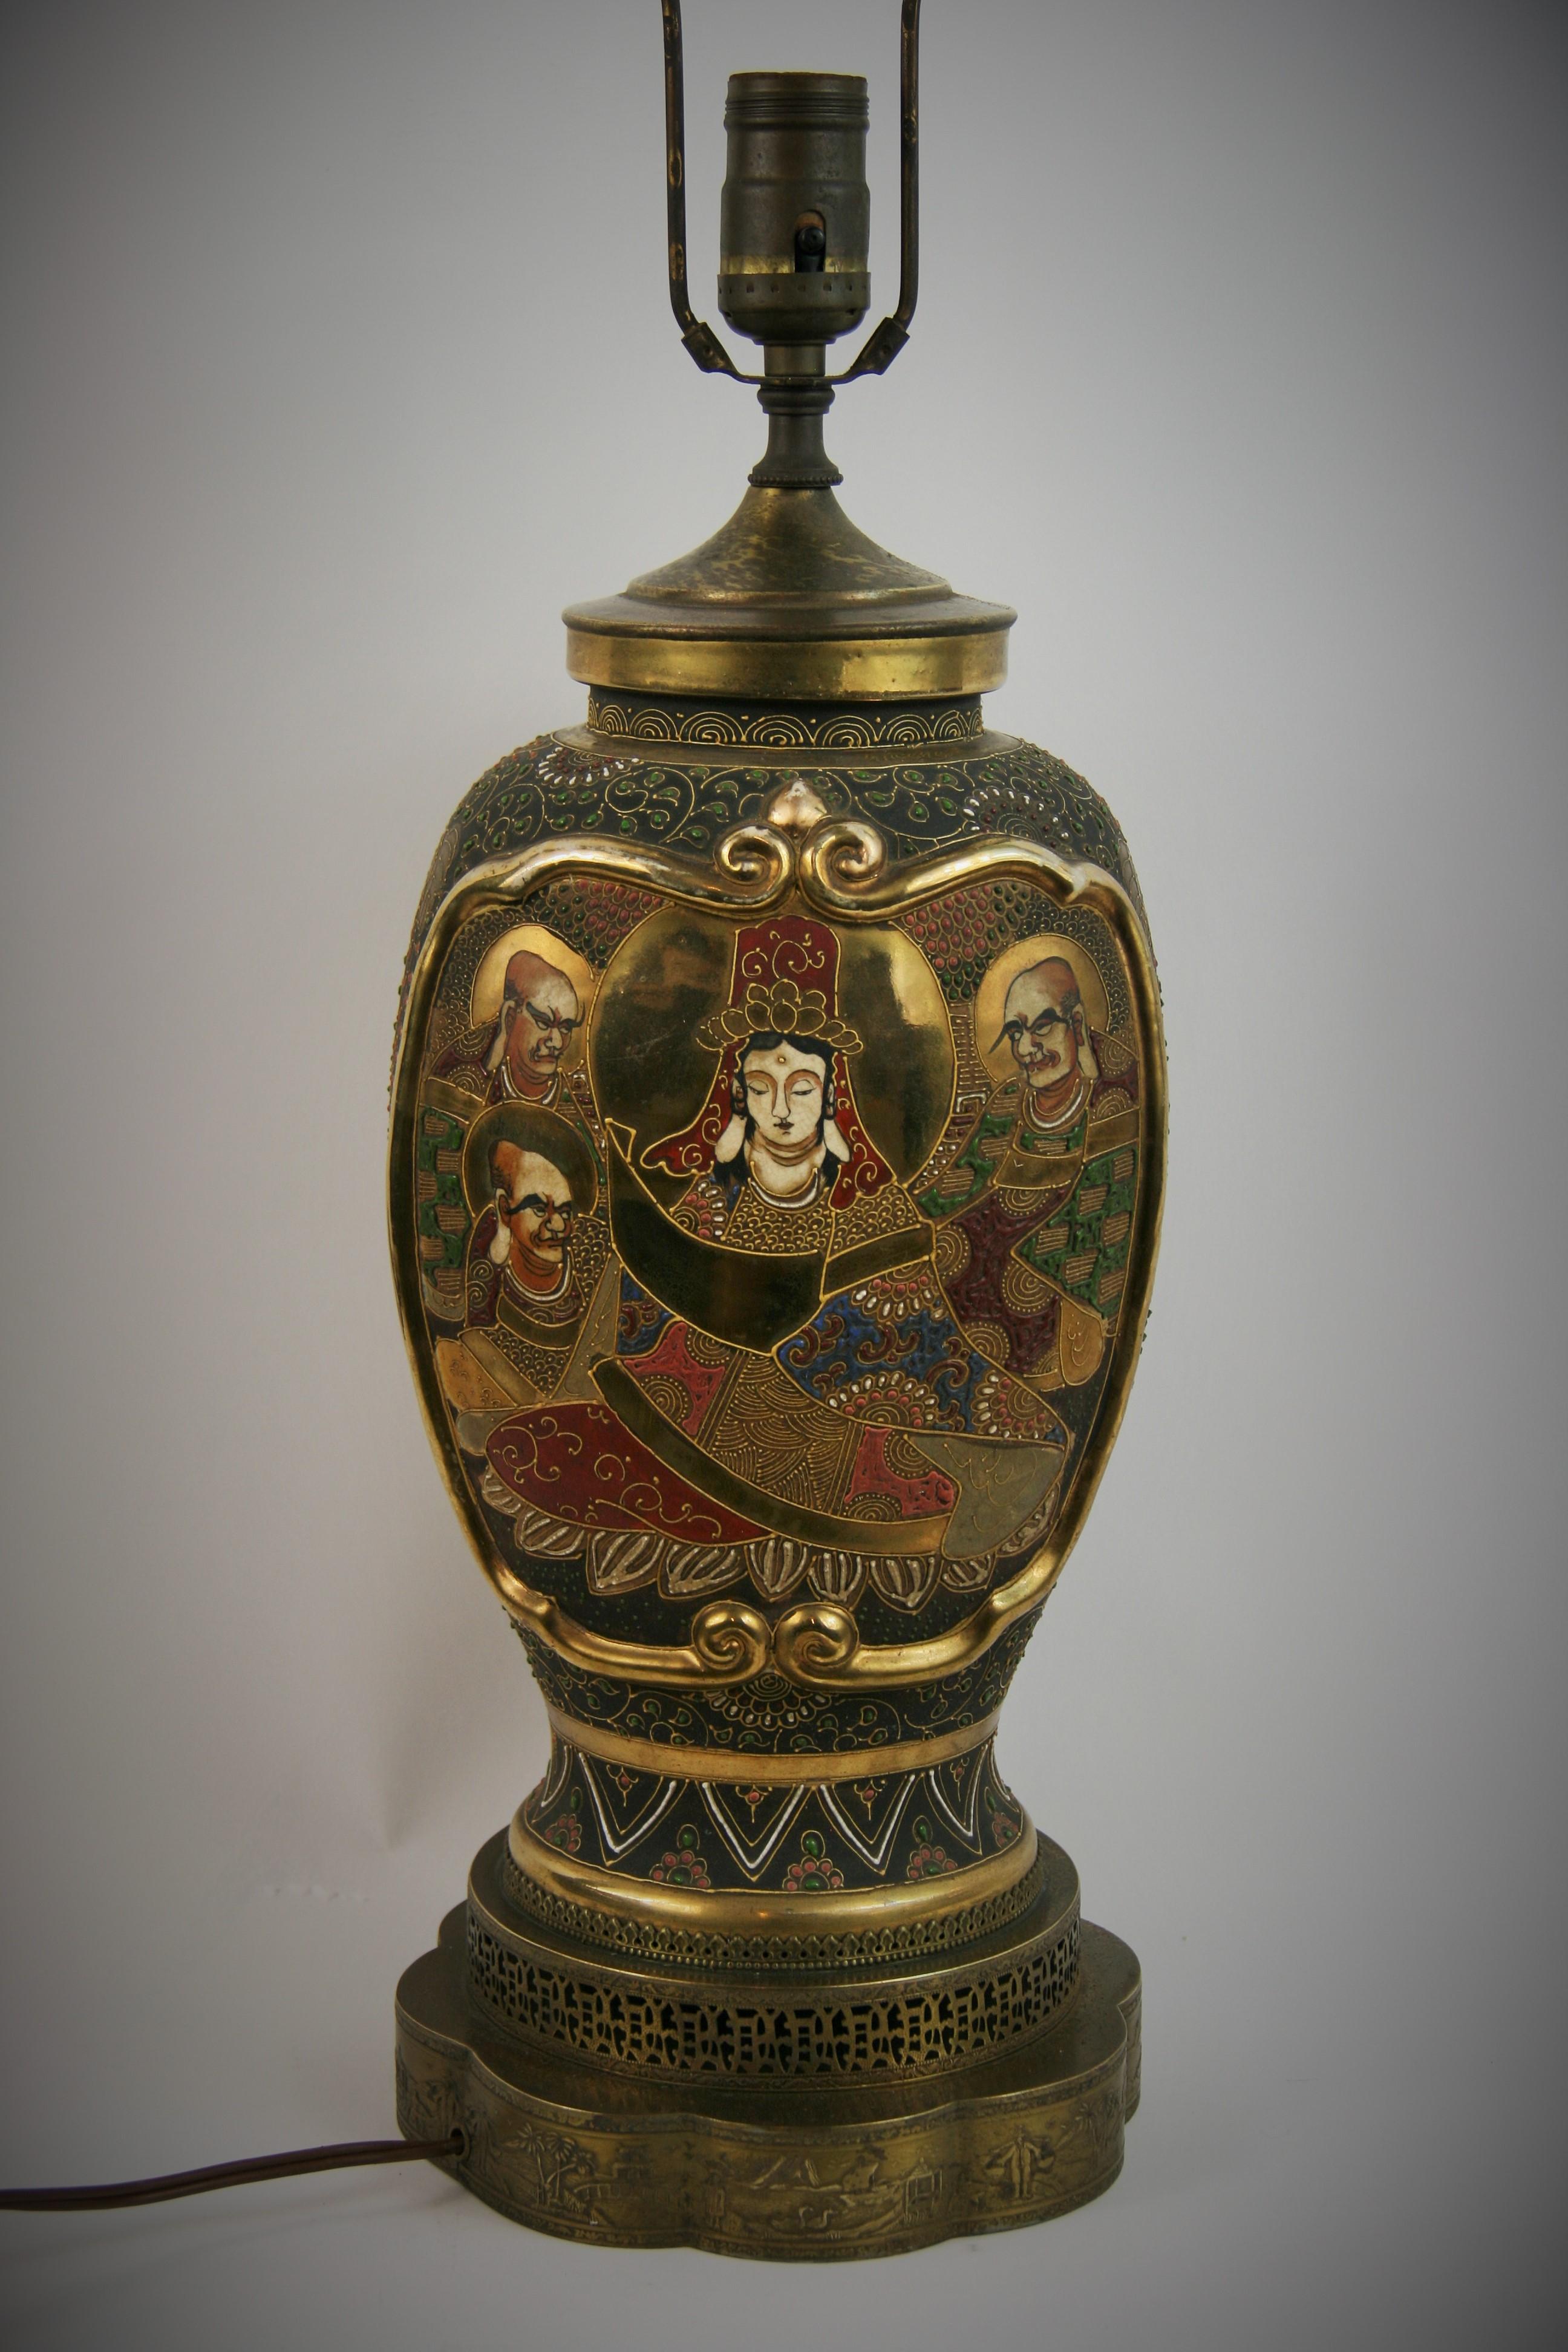  8-272 Vase ancien en porcelaine japonaise Satsuma peint à la main avec des détails dorés en relief, électrifié en lampe de table.
Circa 1920

Posé sur une base personnalisée en laiton avec des détails scéniques. Épi de faîtage pagode doré
Accepte